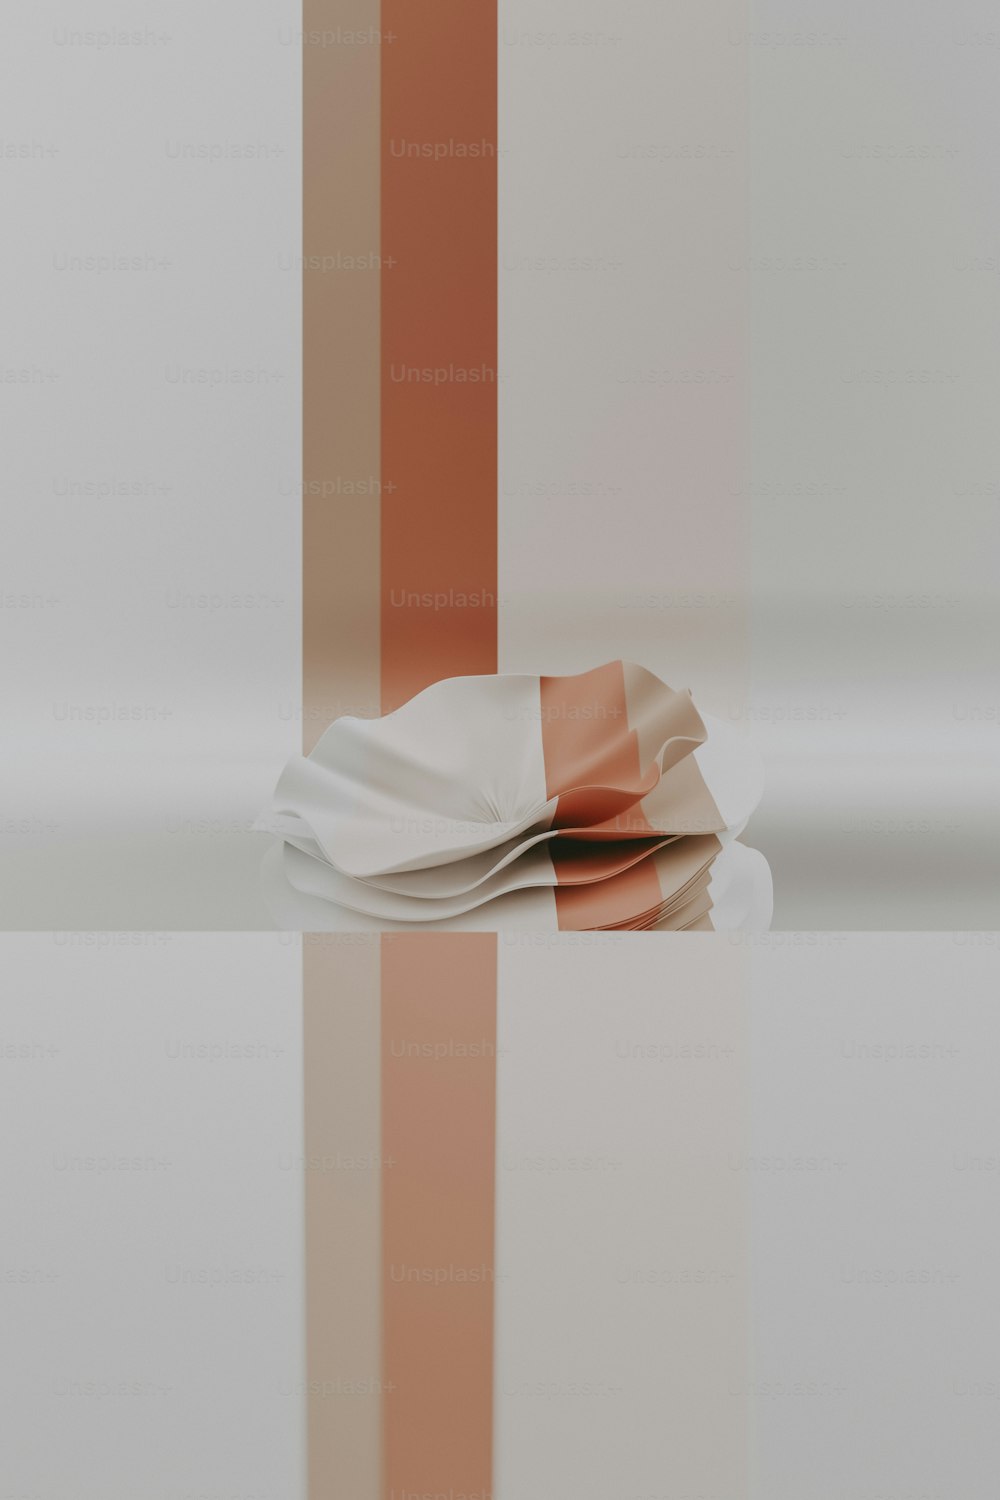 Un pedazo de papel doblado encima de una mesa